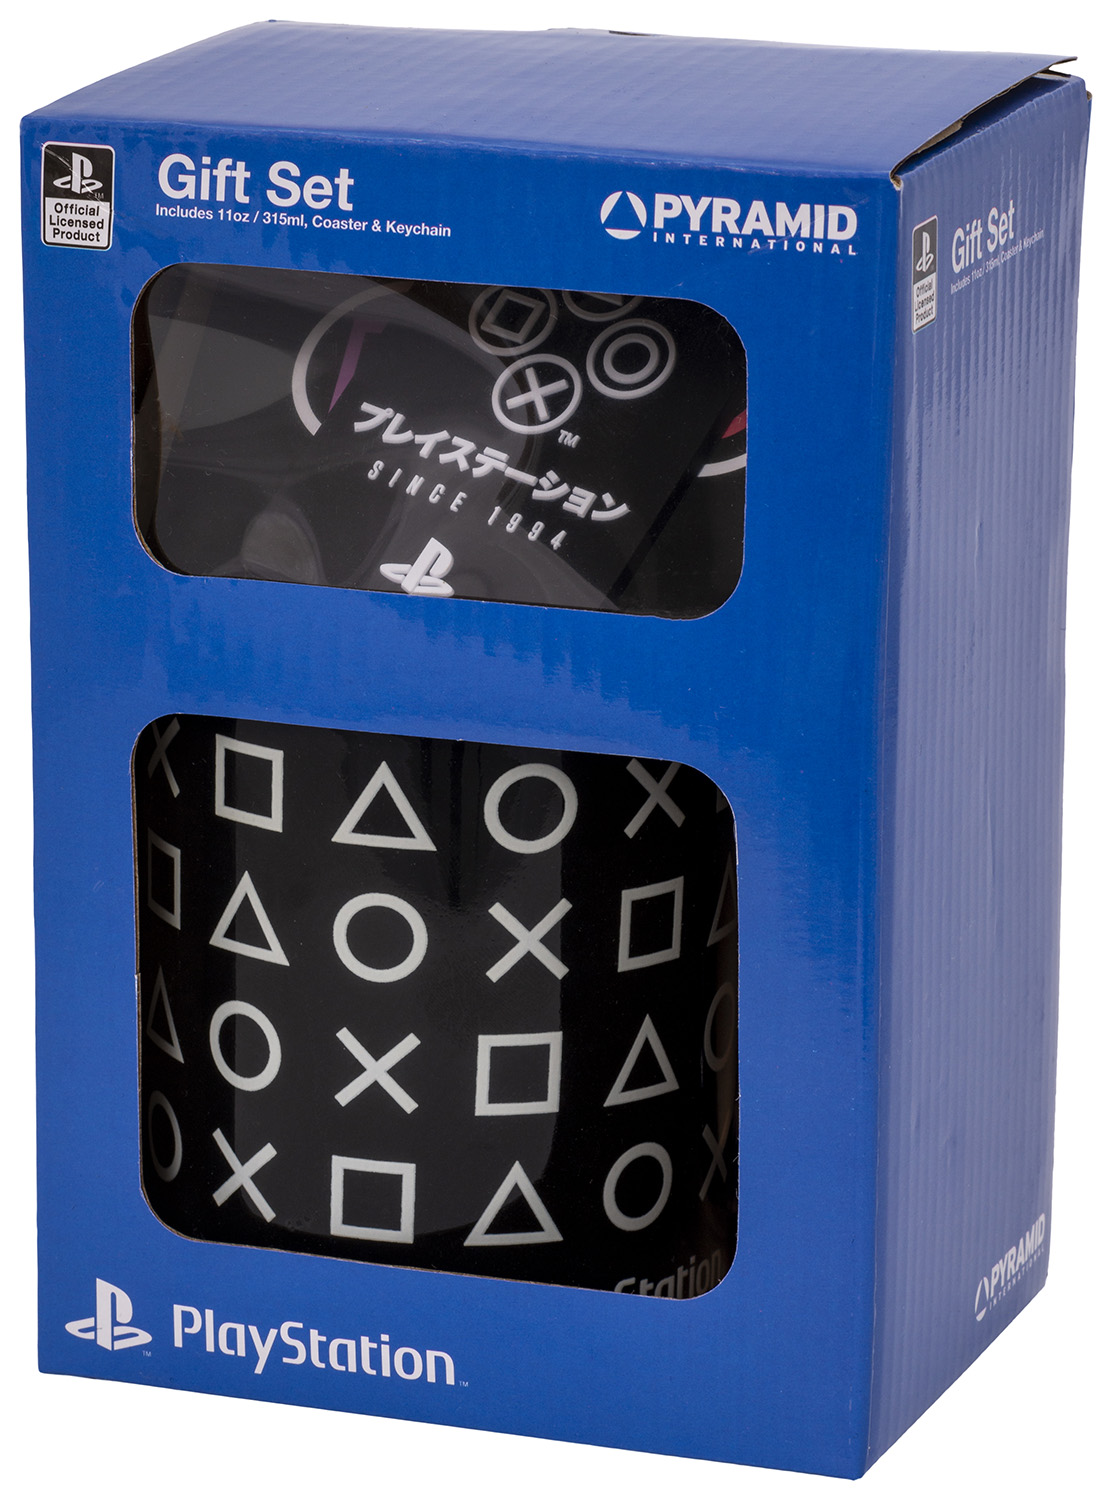 Geschenkset (Tasse, Untersetzer & Schlüsselanhänger) - PlayStation